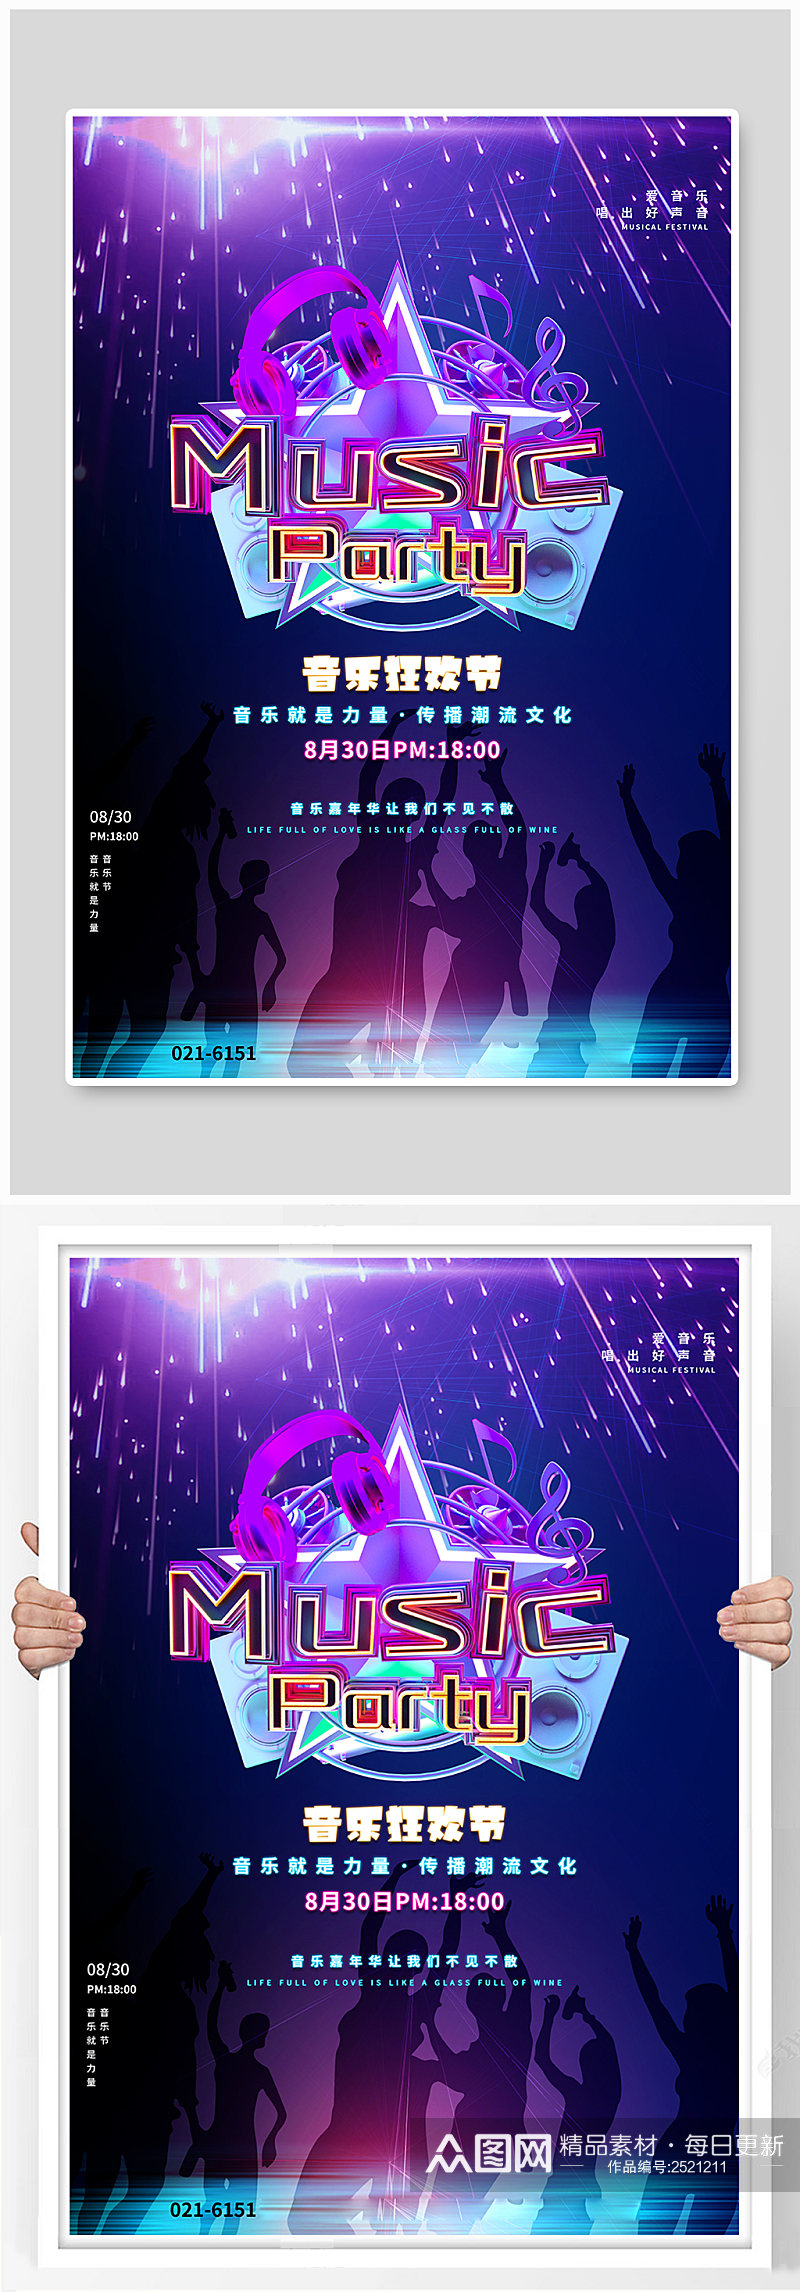 蓝紫色渐变音乐狂欢节海报素材